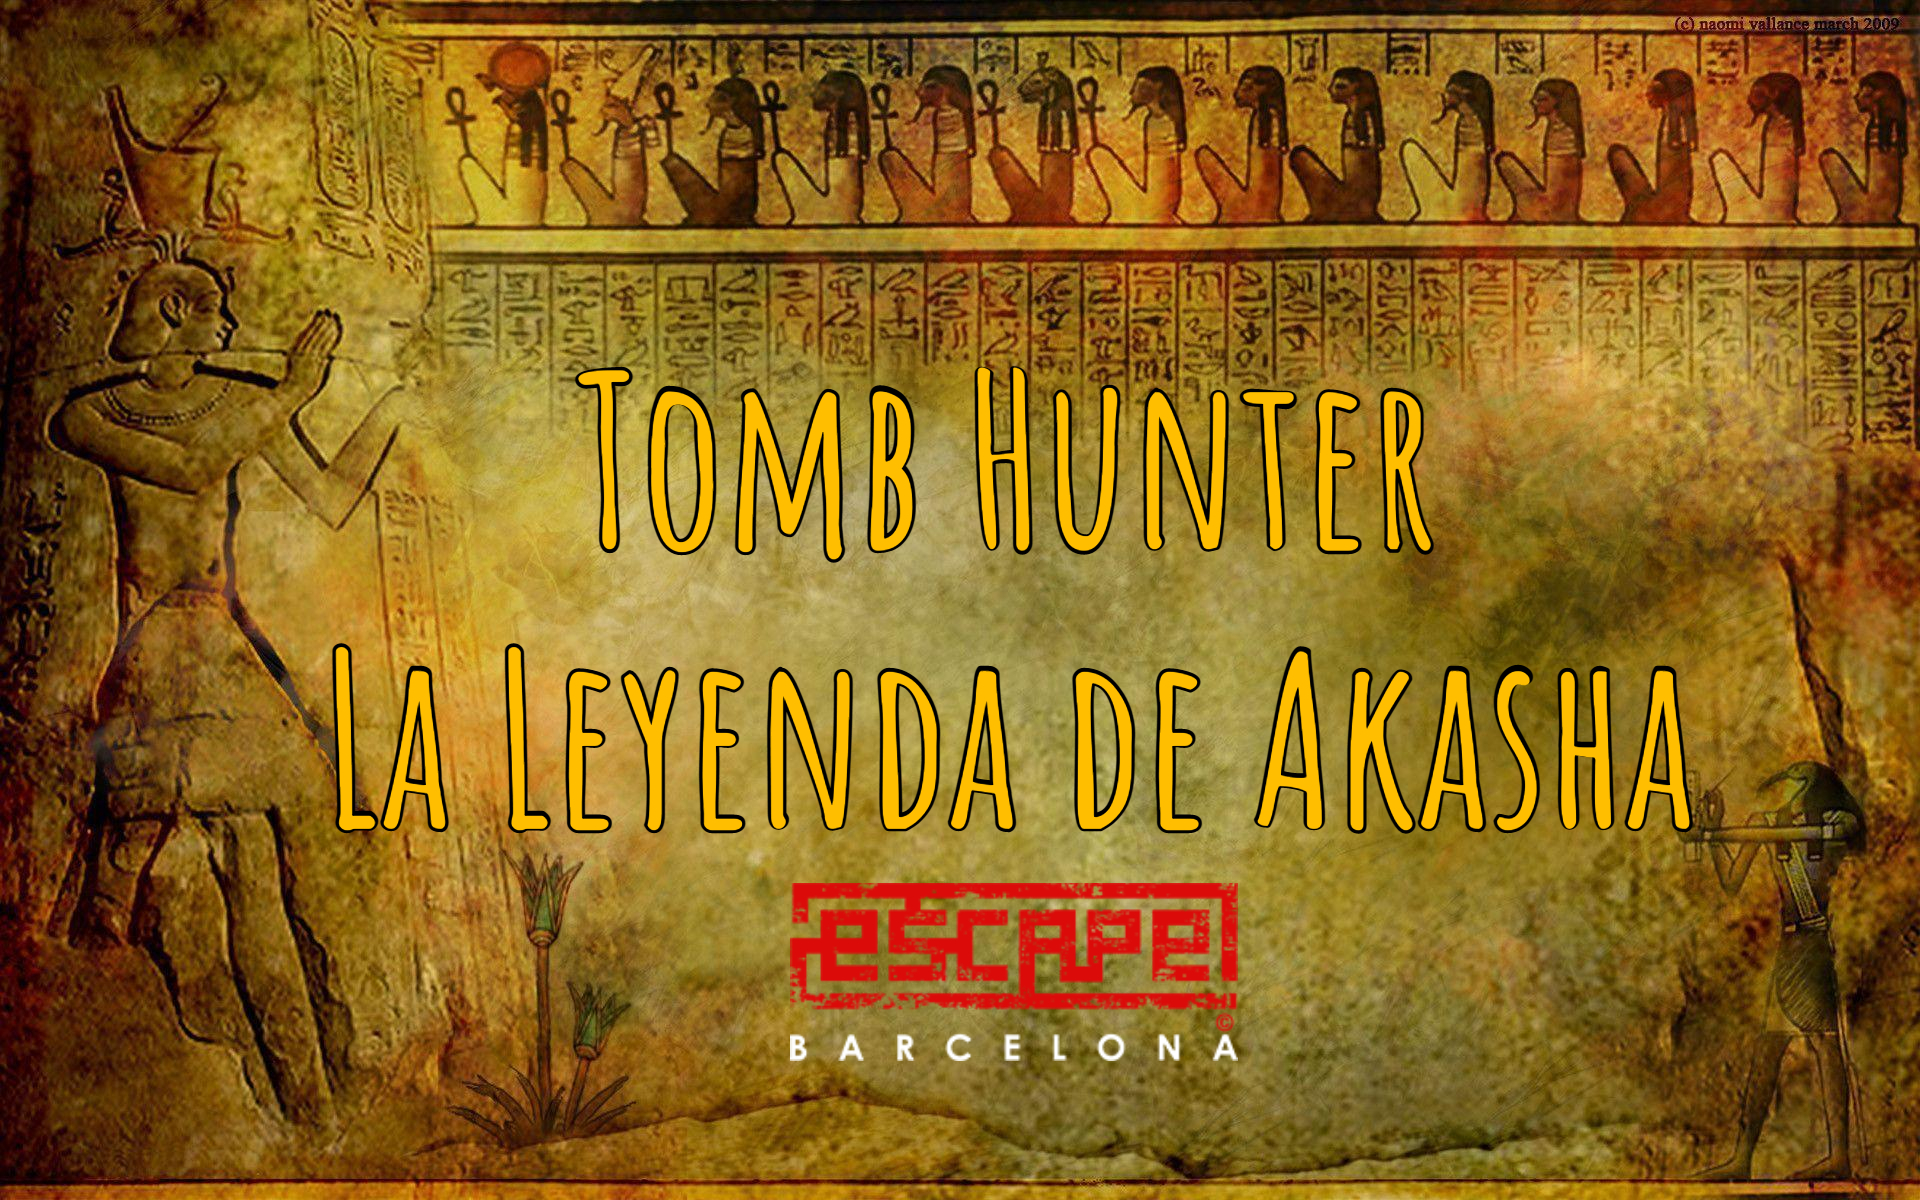 Tomb Hunter: La Leyenda de Akasha - Escape Barcelona - Review Escape Room